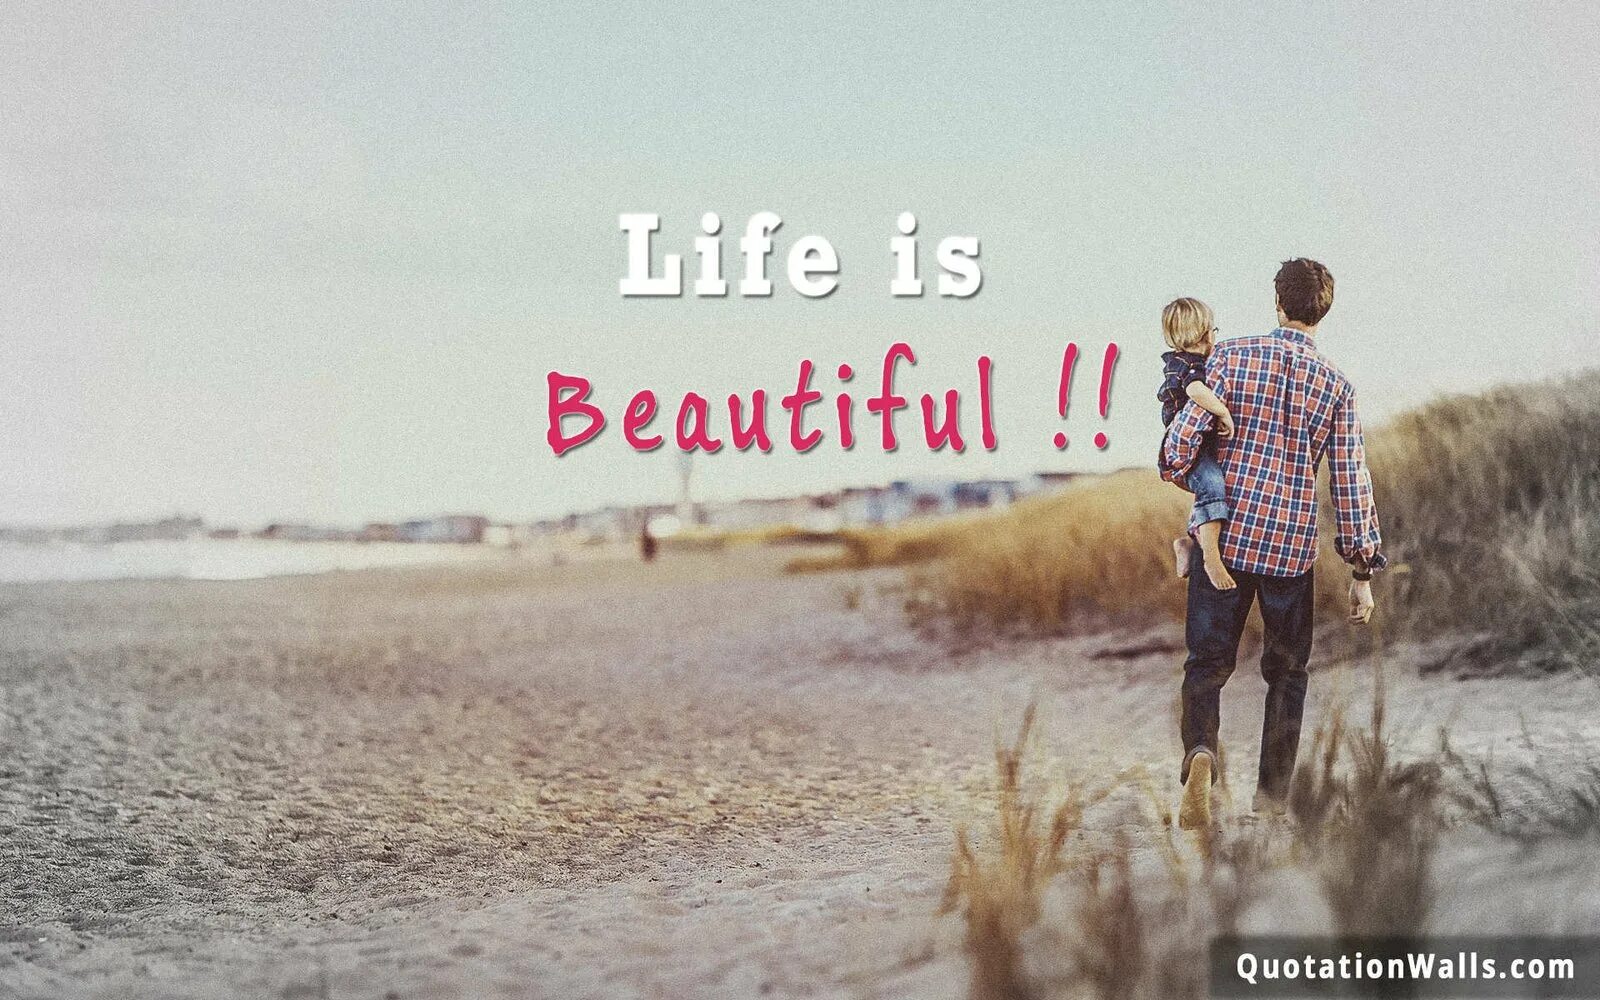 Life is beauty. Life is beautiful. Life is beautiful картинки. Life is beautiful обои. Обои на телефон Life is beautiful.